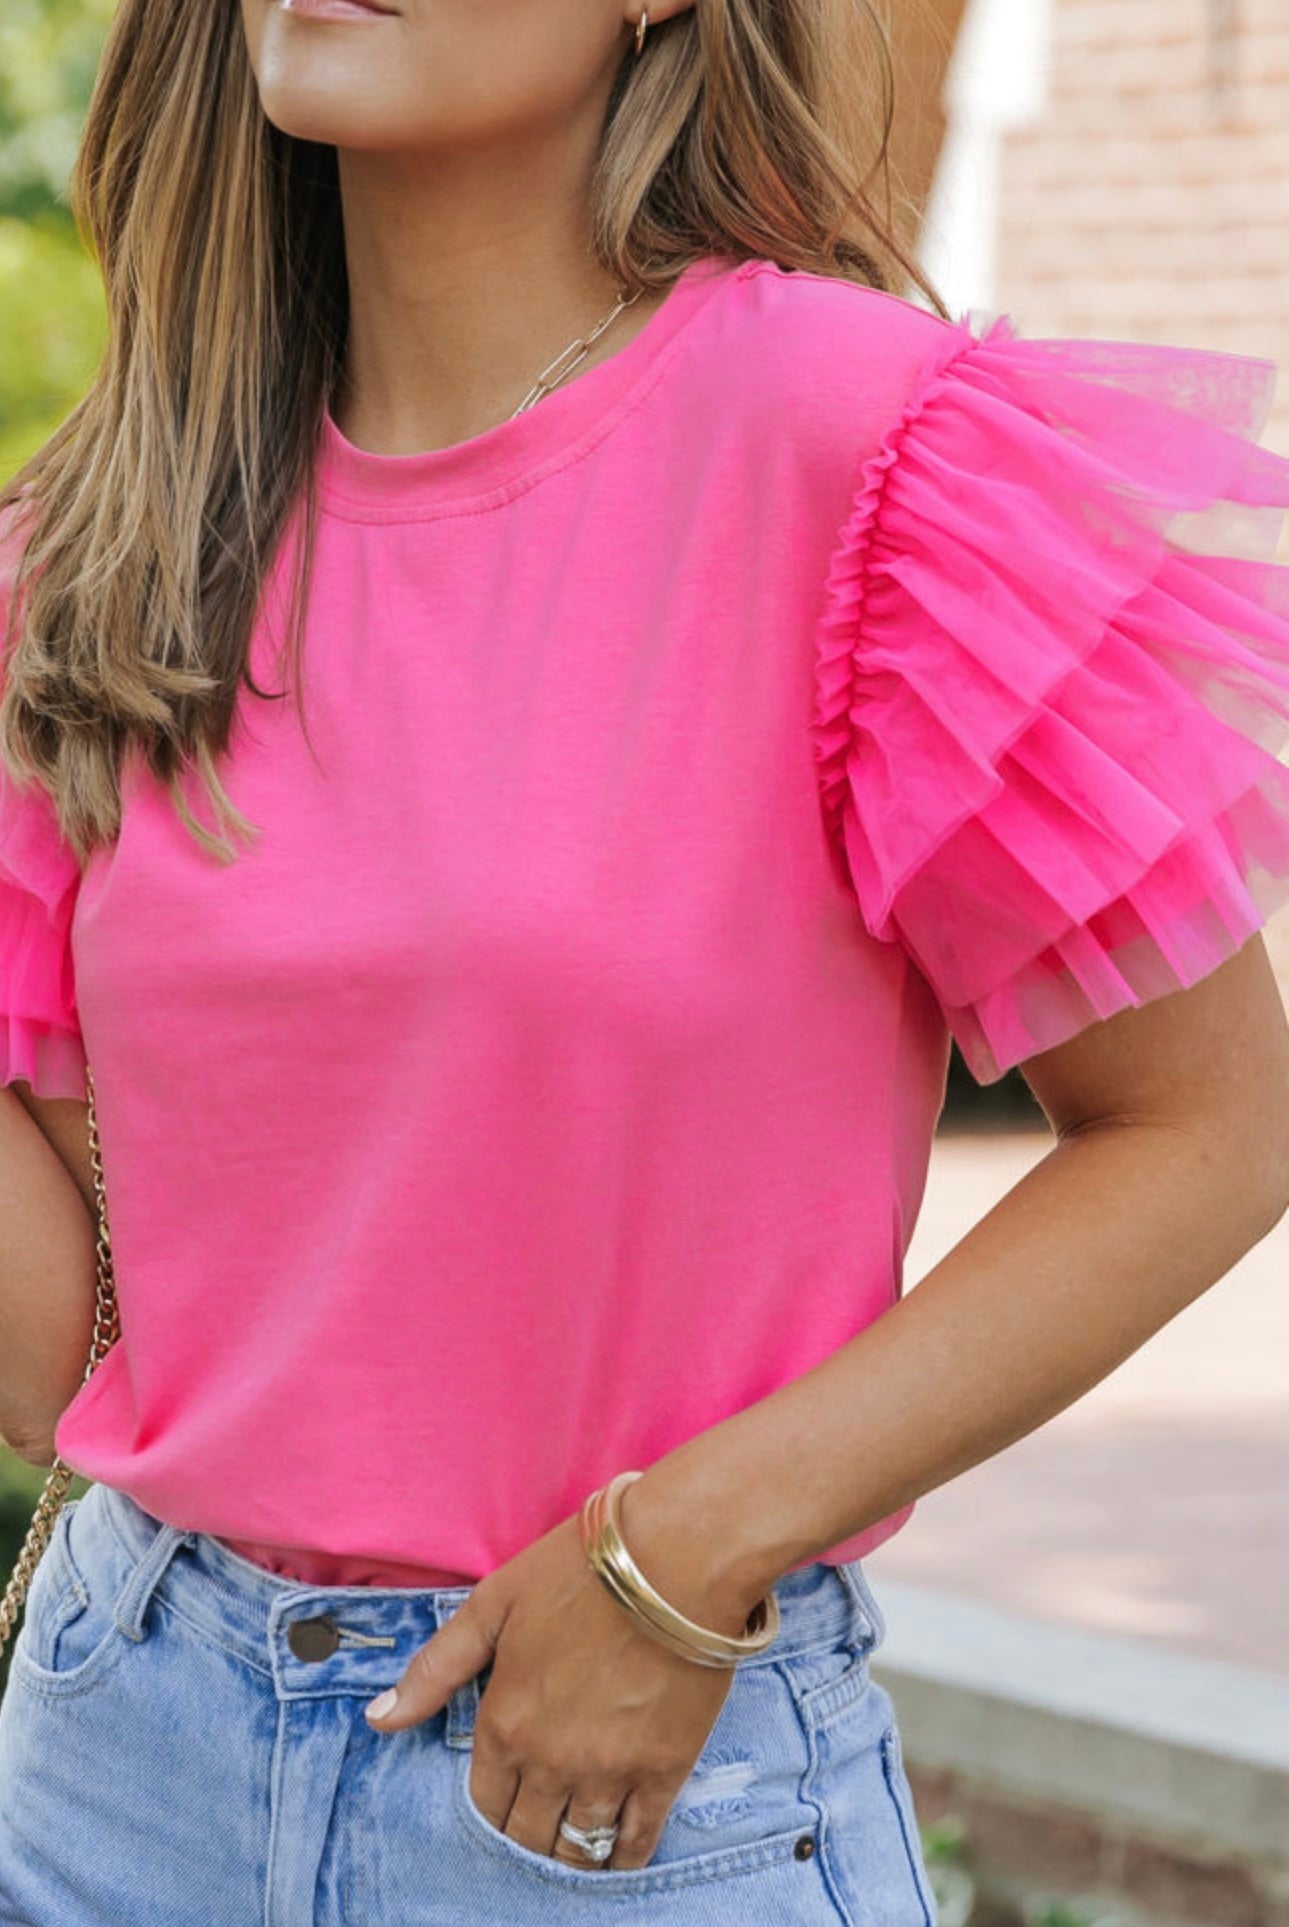 Ruffled pink tshirt